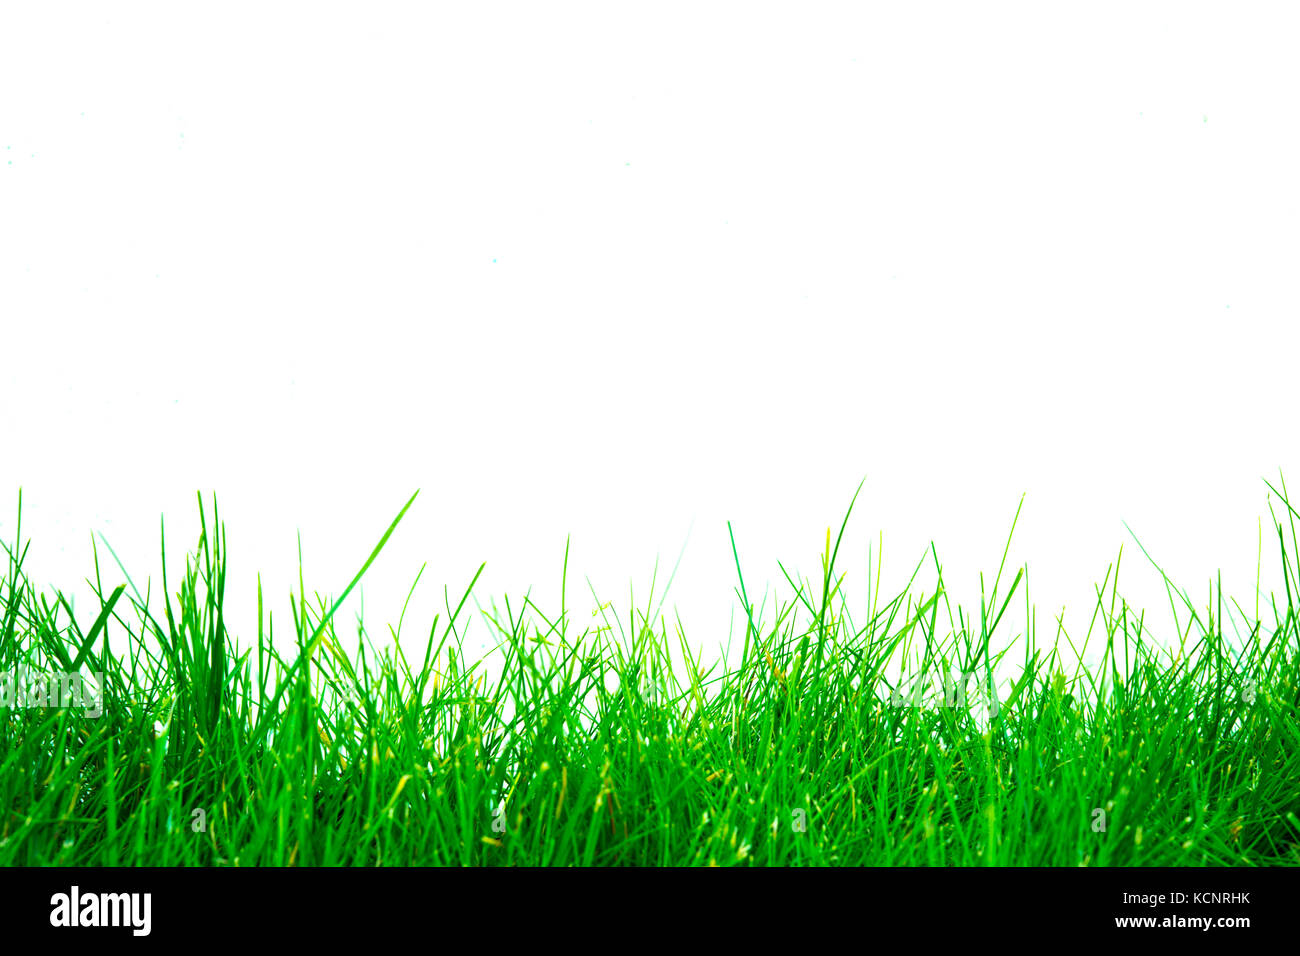 Nền Green Grass Background tuyệt đẹp này sẽ khiến bất kỳ ai cũng ngạc nhiên về độ sắc nét và chân thực của hình ảnh. Sử dụng Green screen để kết hợp với nền này sẽ làm thay đổi hoàn toàn tổng thể của bức ảnh hoặc video của bạn.